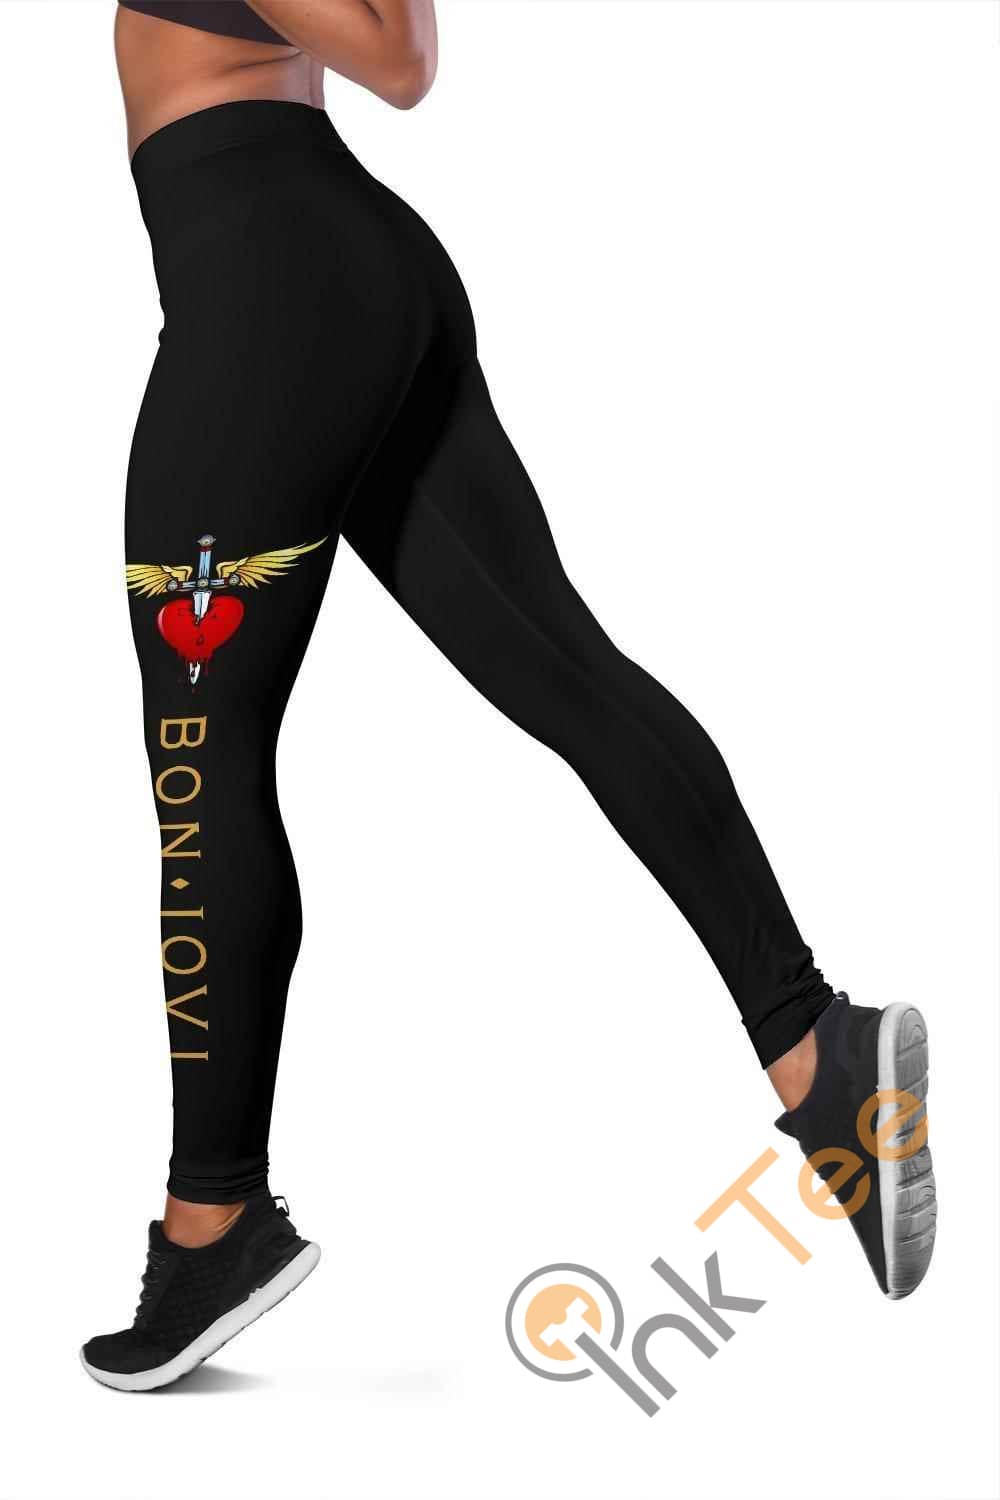 Inktee Store - Bon Jovi 3D All Over Print For Yoga Fitness Women'S Leggings Image